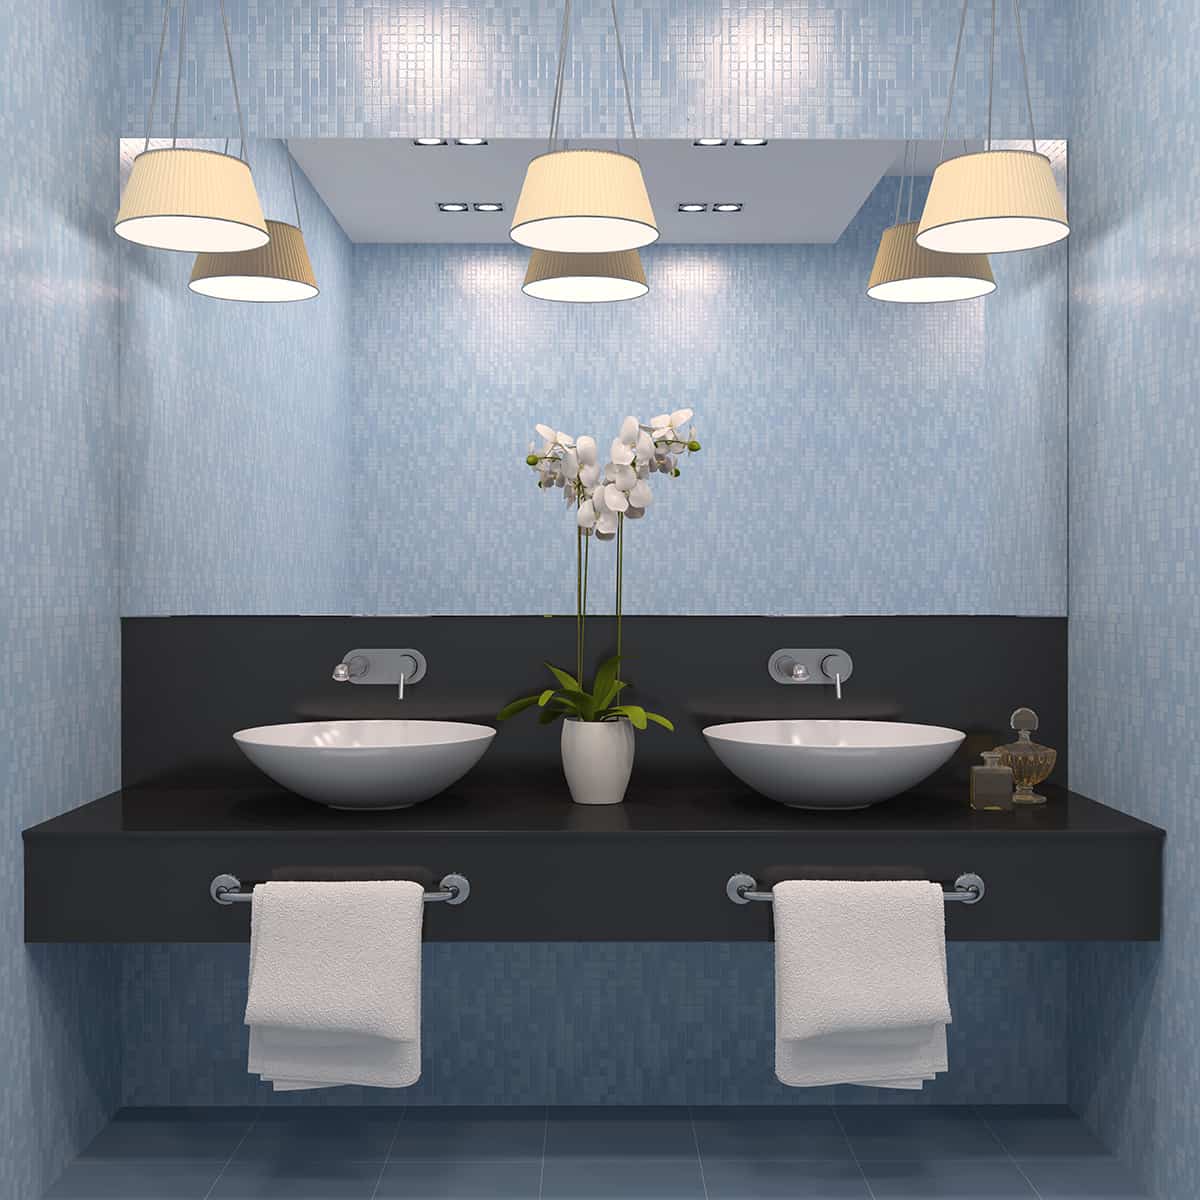 淺藍色的牆壁和深灰色的浴室櫥櫃